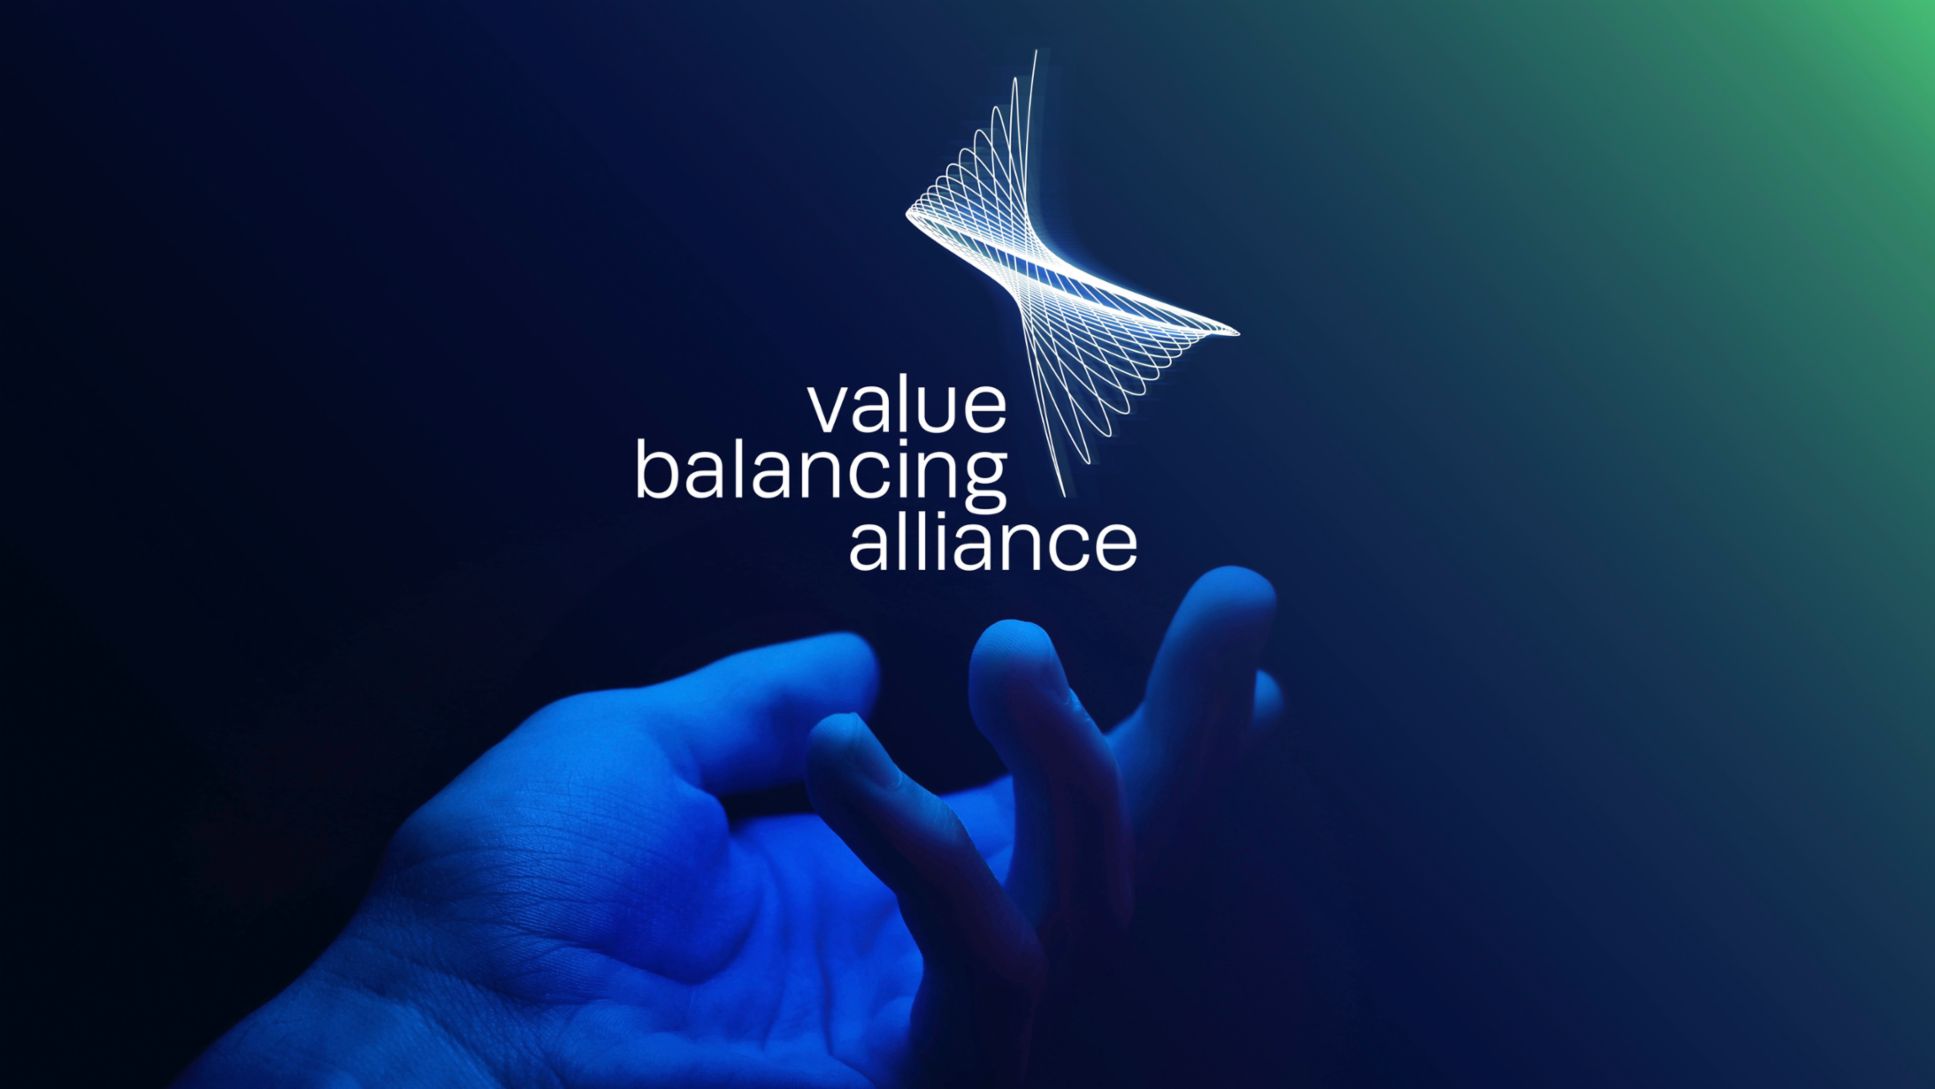 Value Balancing Alliance, 2021, Porsche AG